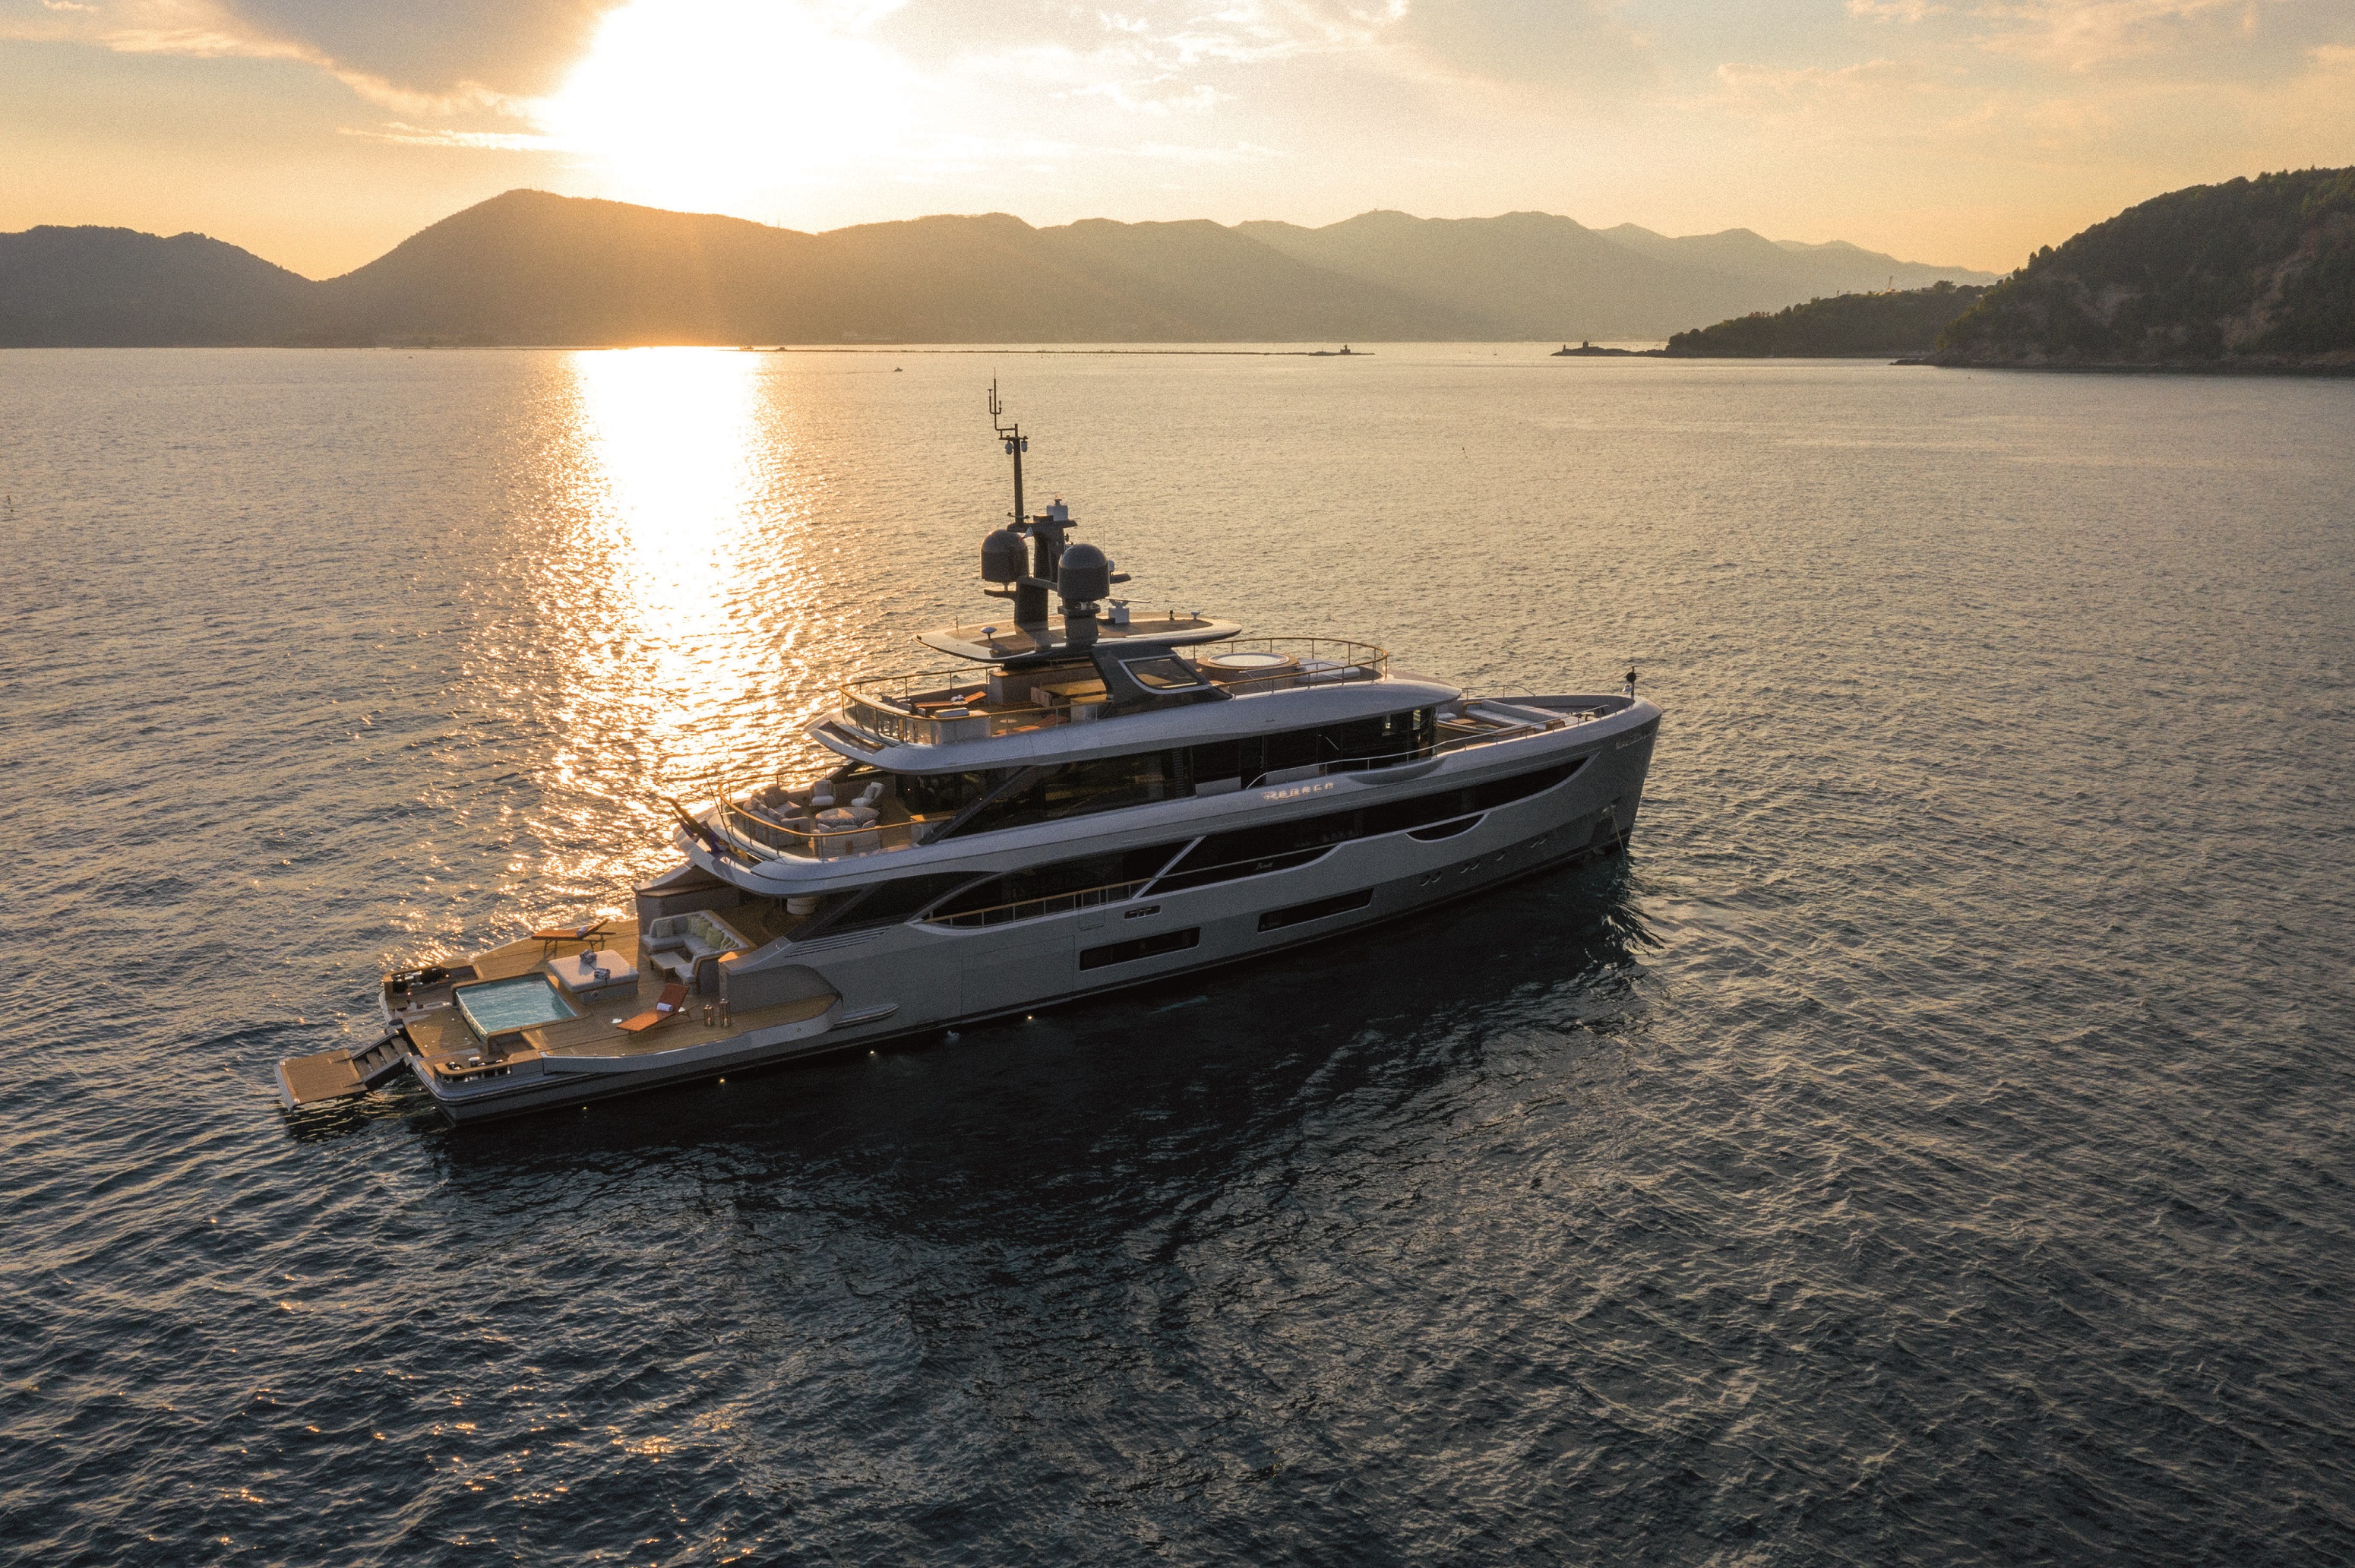 Benetti Oasis 40M M/Y “Rebeca”: uno yacht innovativo, raffinato e informale che esalta il contatto con il mare